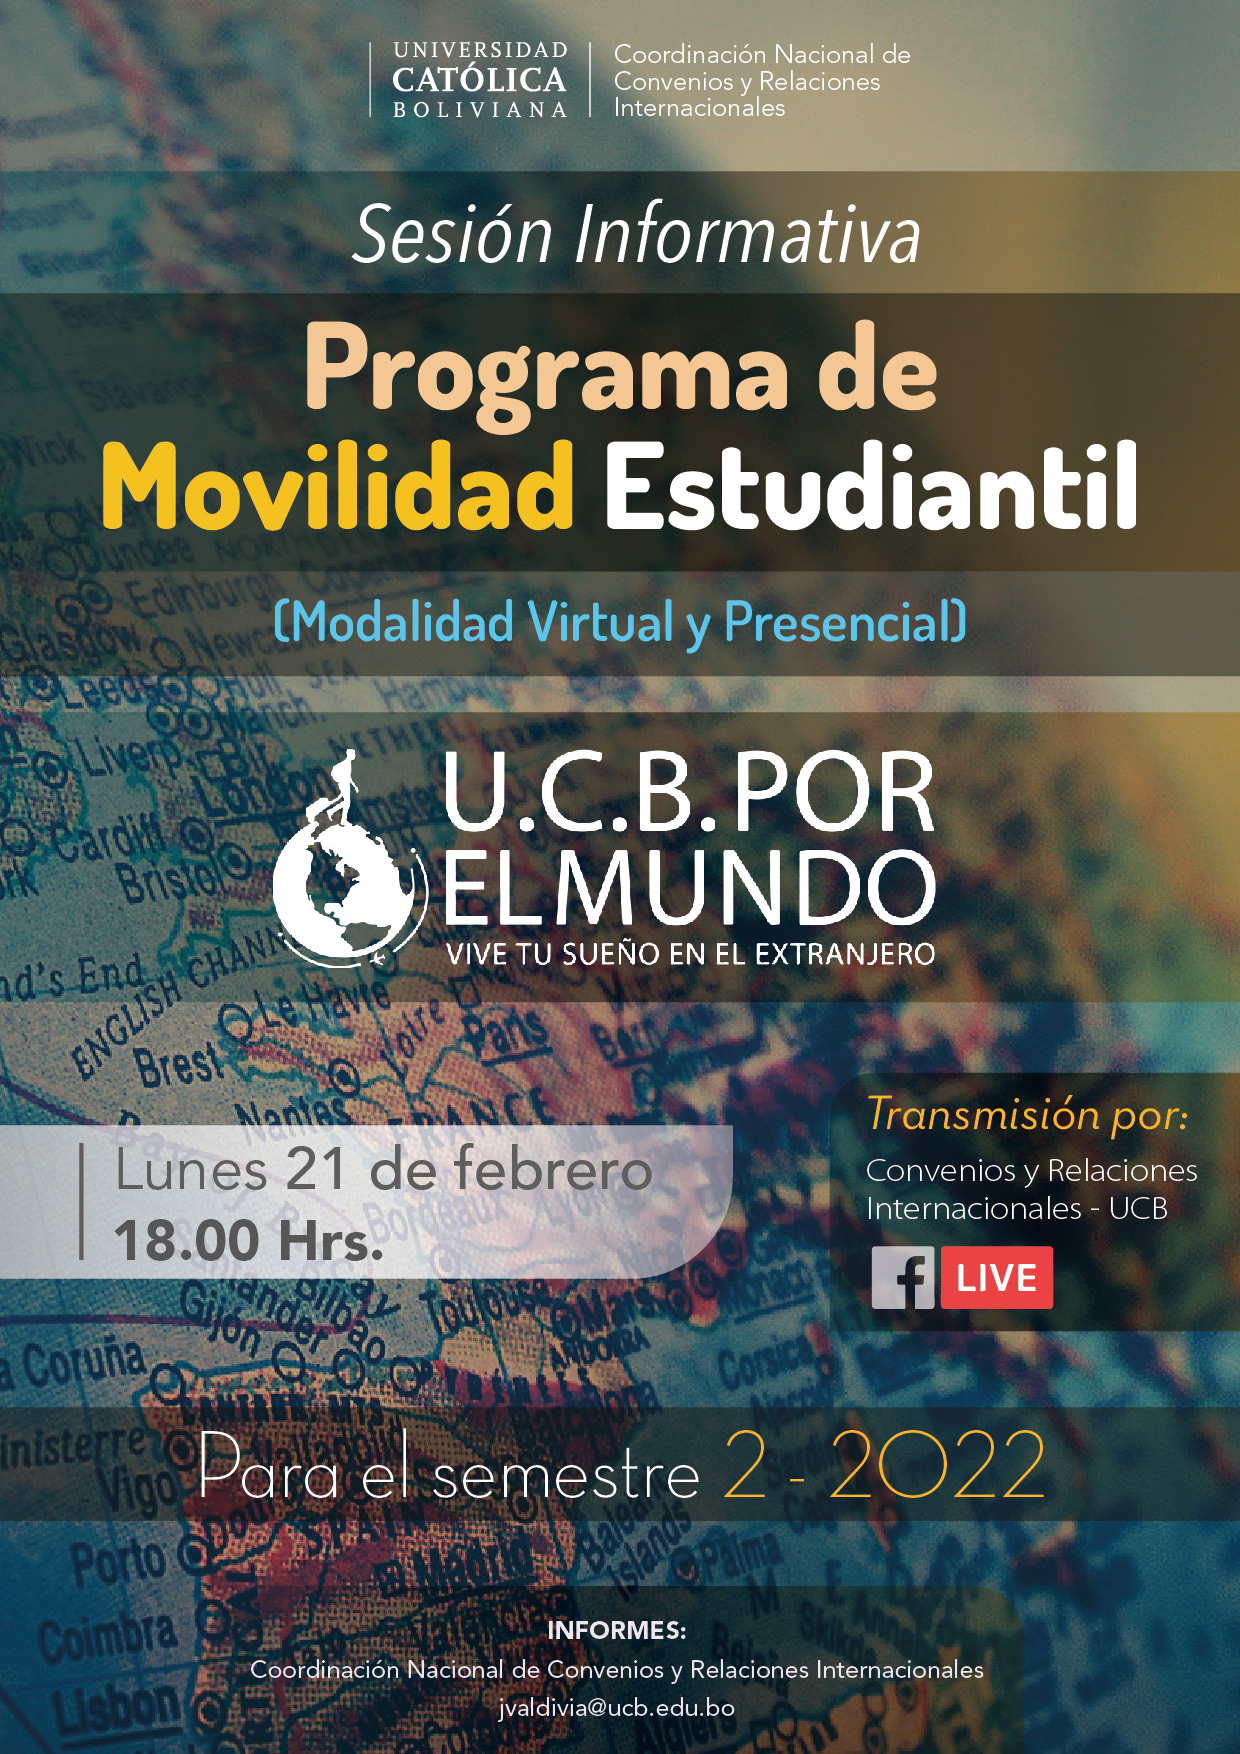 ¡El Programa de Movilidad Estudiantil UCB por el Mundo ya está abierto para el semestre 2-2022! La sesión informativa se realizará este lunes 21 a horas 18:00 a través de nuestro canal de Facebook.